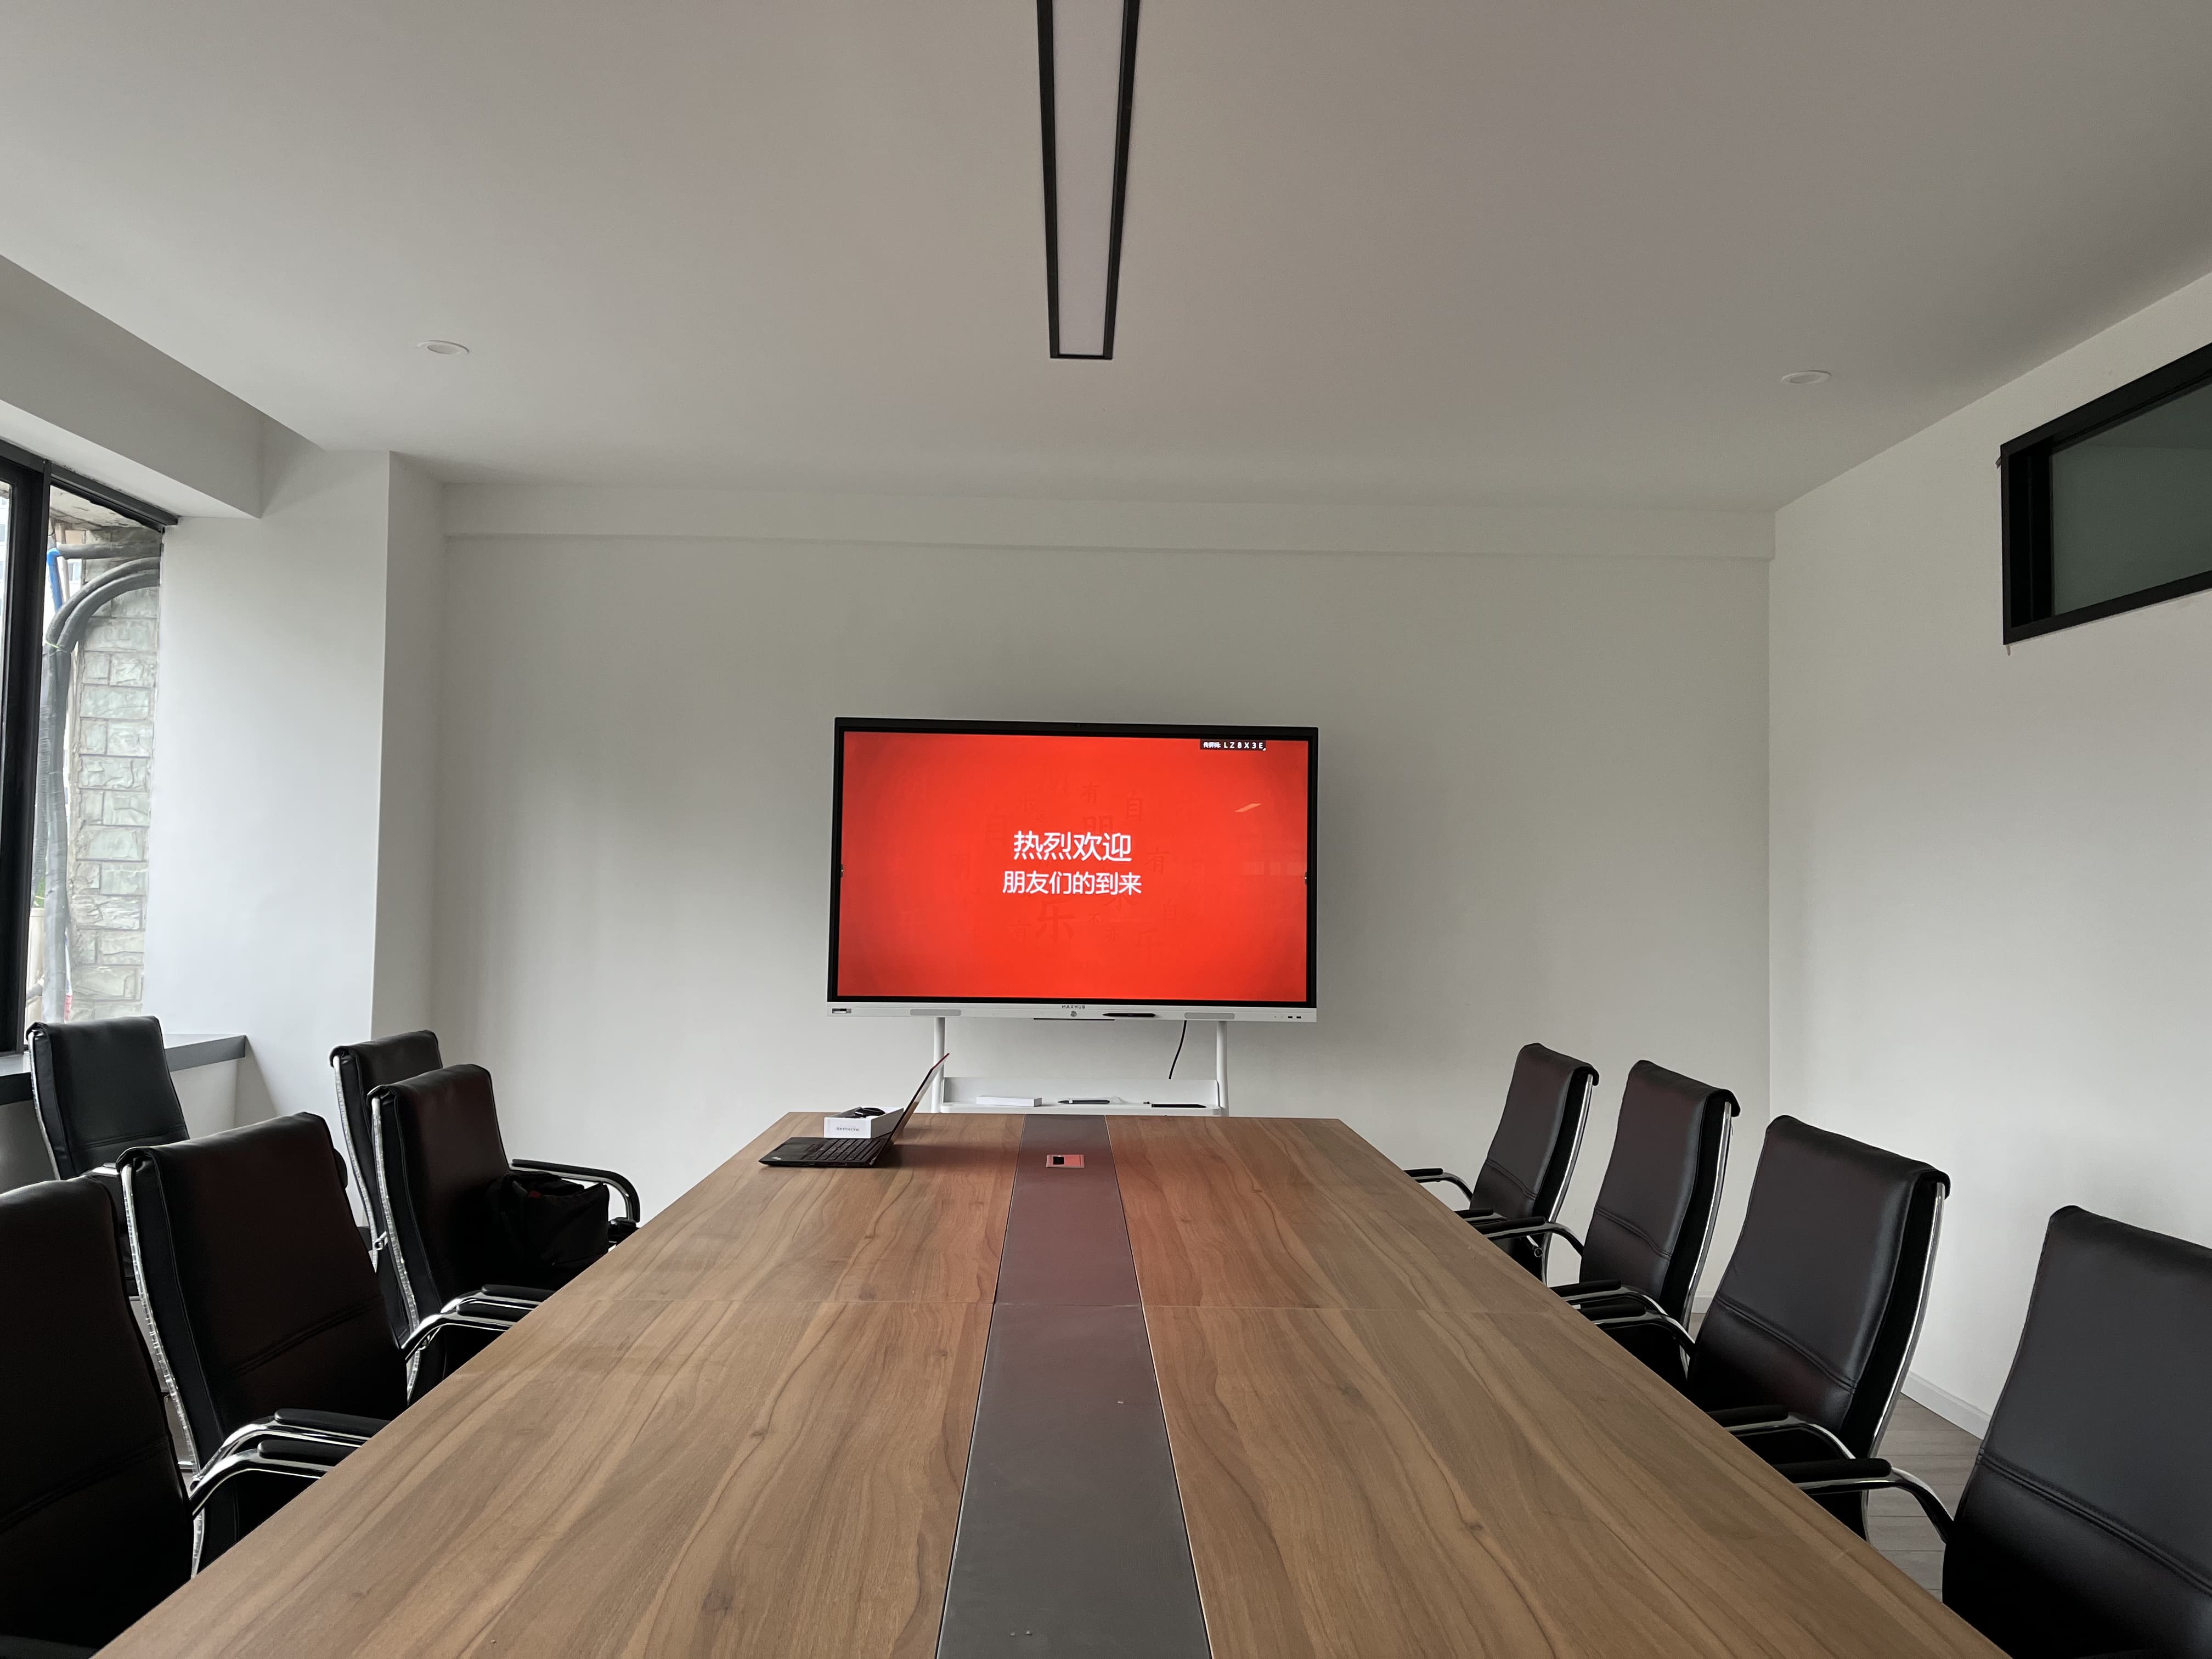 用智能会议平板高效提升会议效率